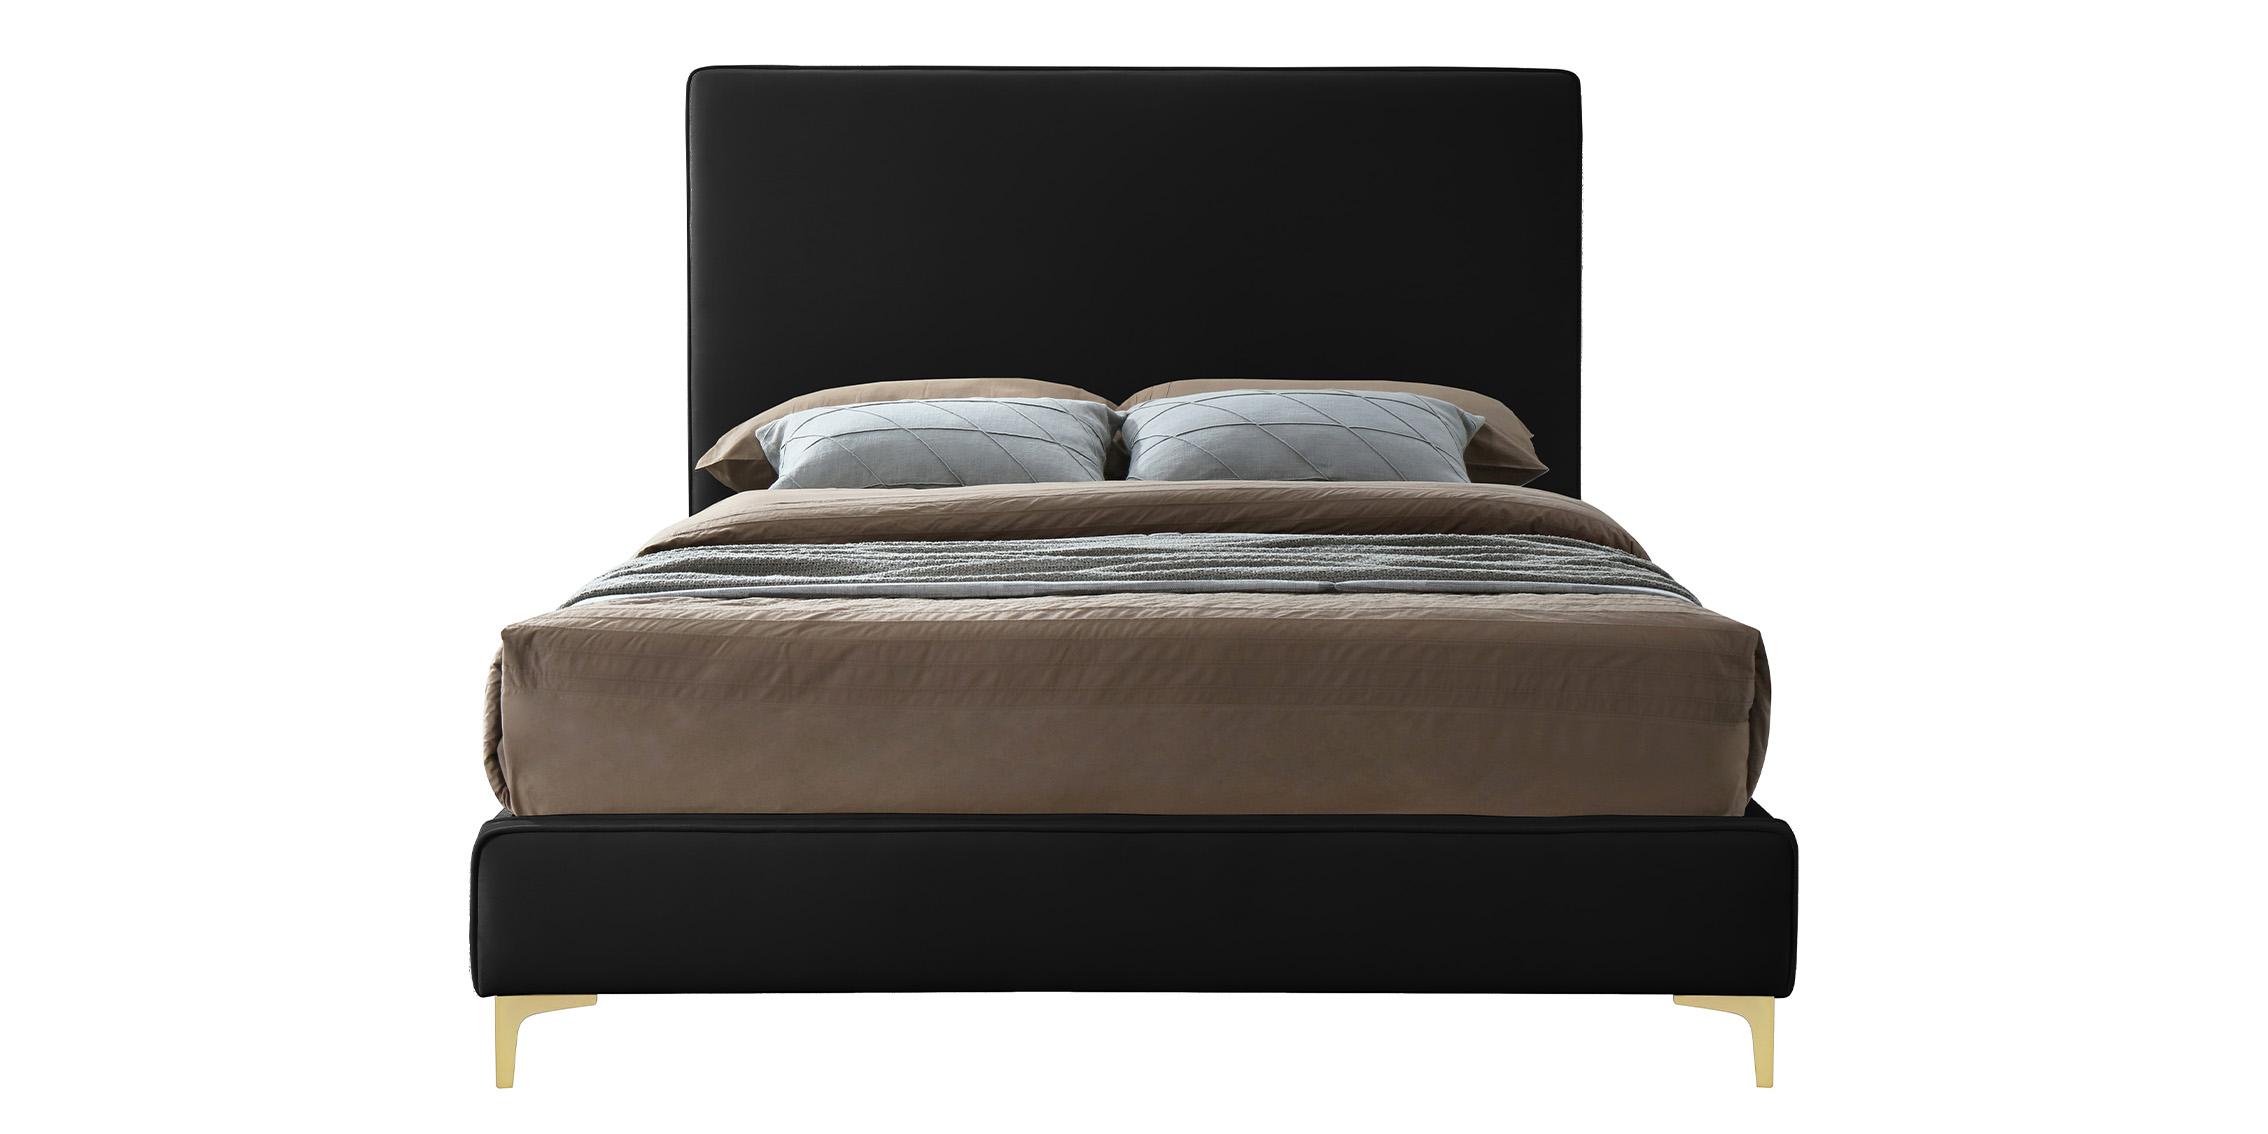 

    
GeriBlack-K Meridian Furniture Platform Bed
